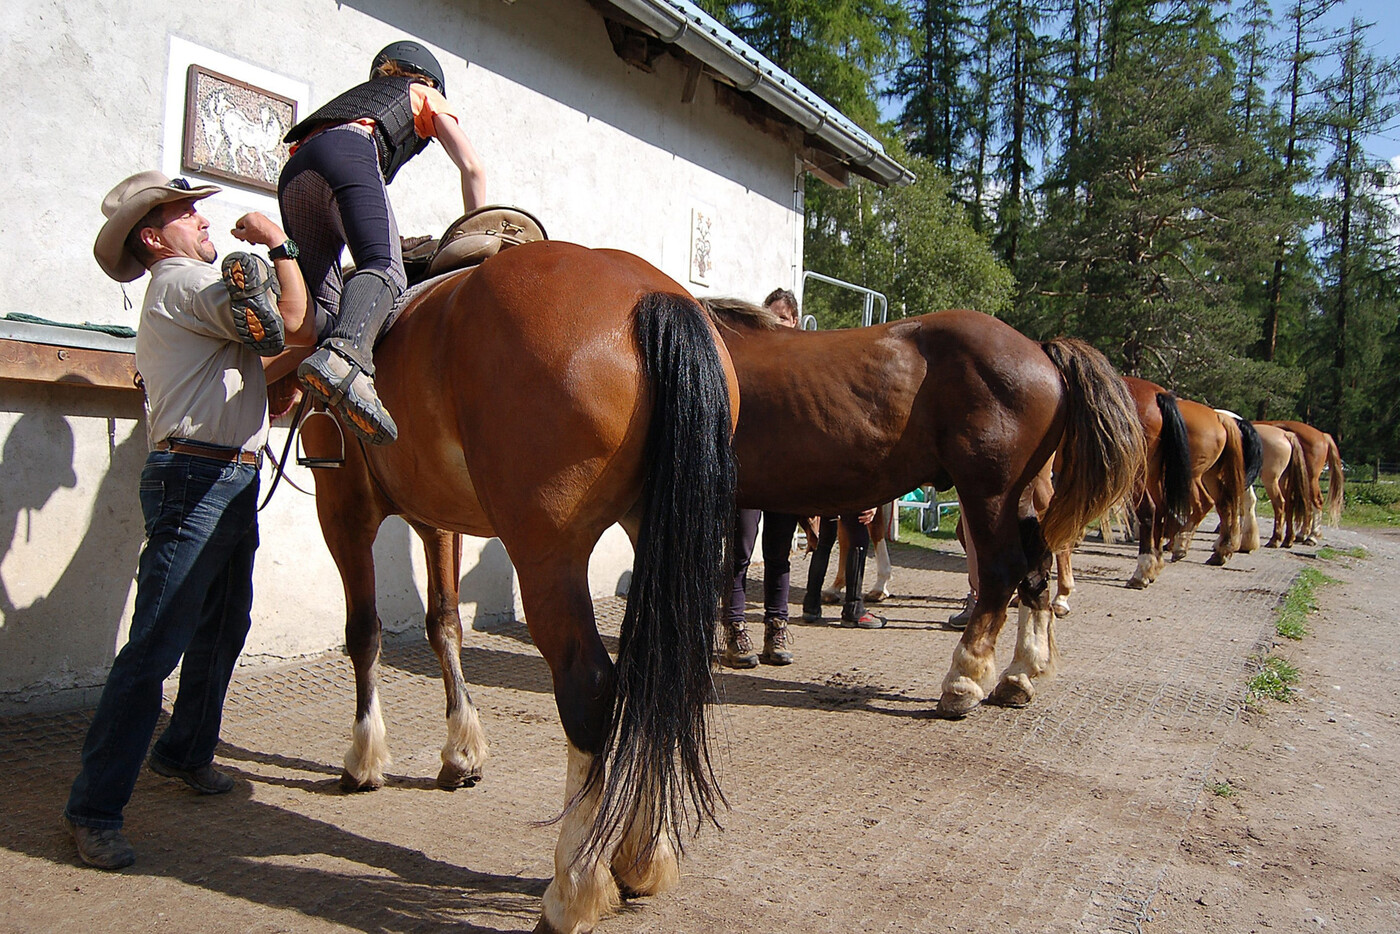 Ausritt in San Jon: Die Pferde stehen bereit und ein Mädchen schwingt sich mit ein bisschen Hilfe in den Sattel.